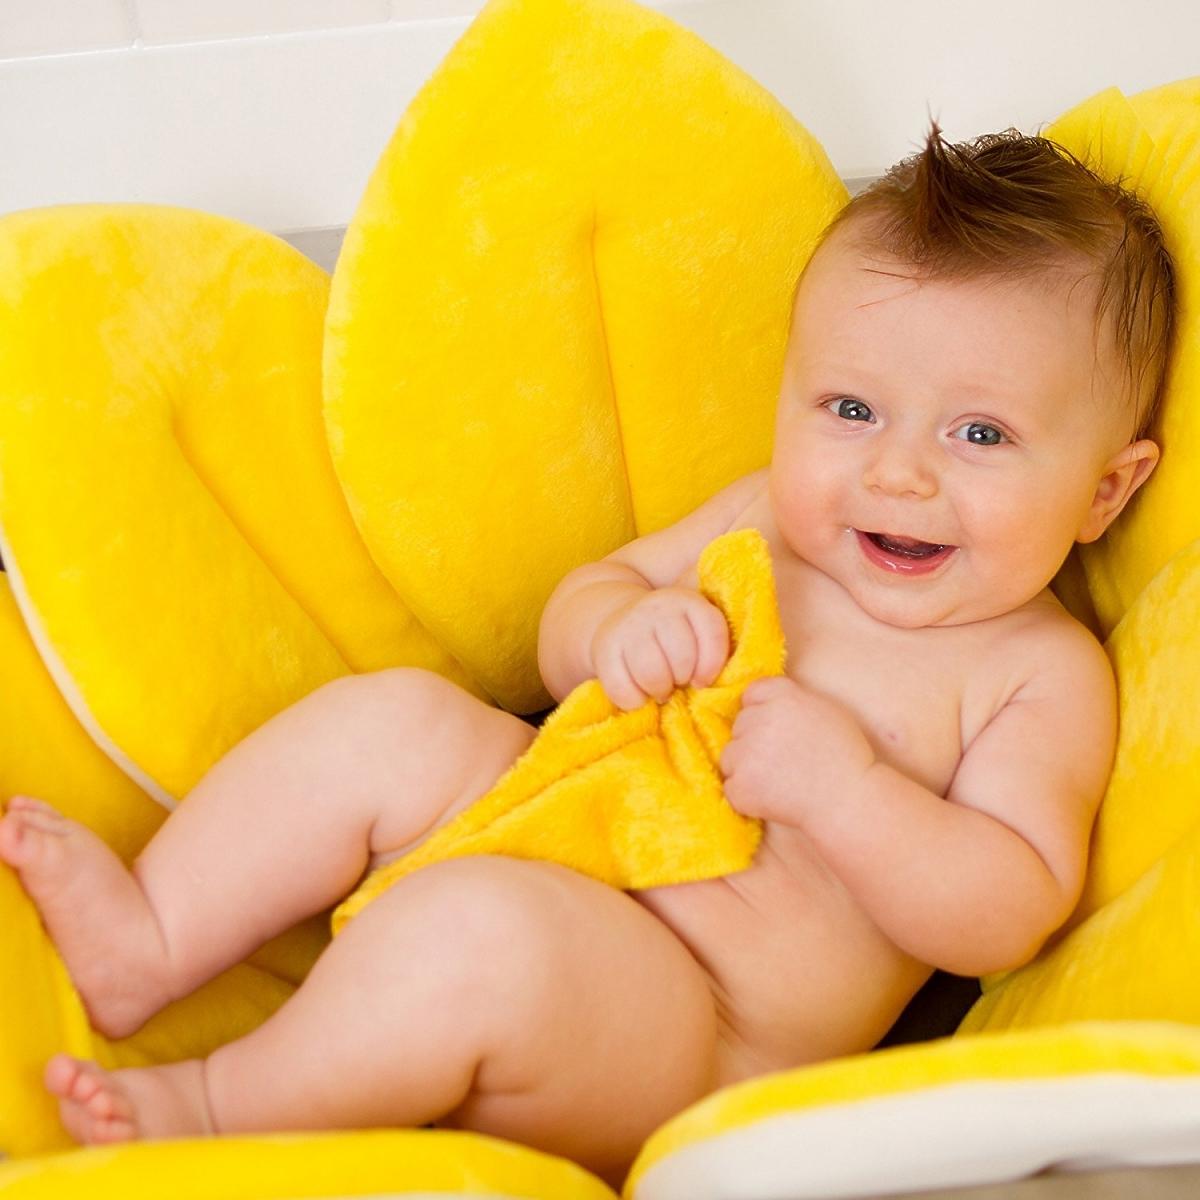 niemowlę w żółtym kwiatku.jpg